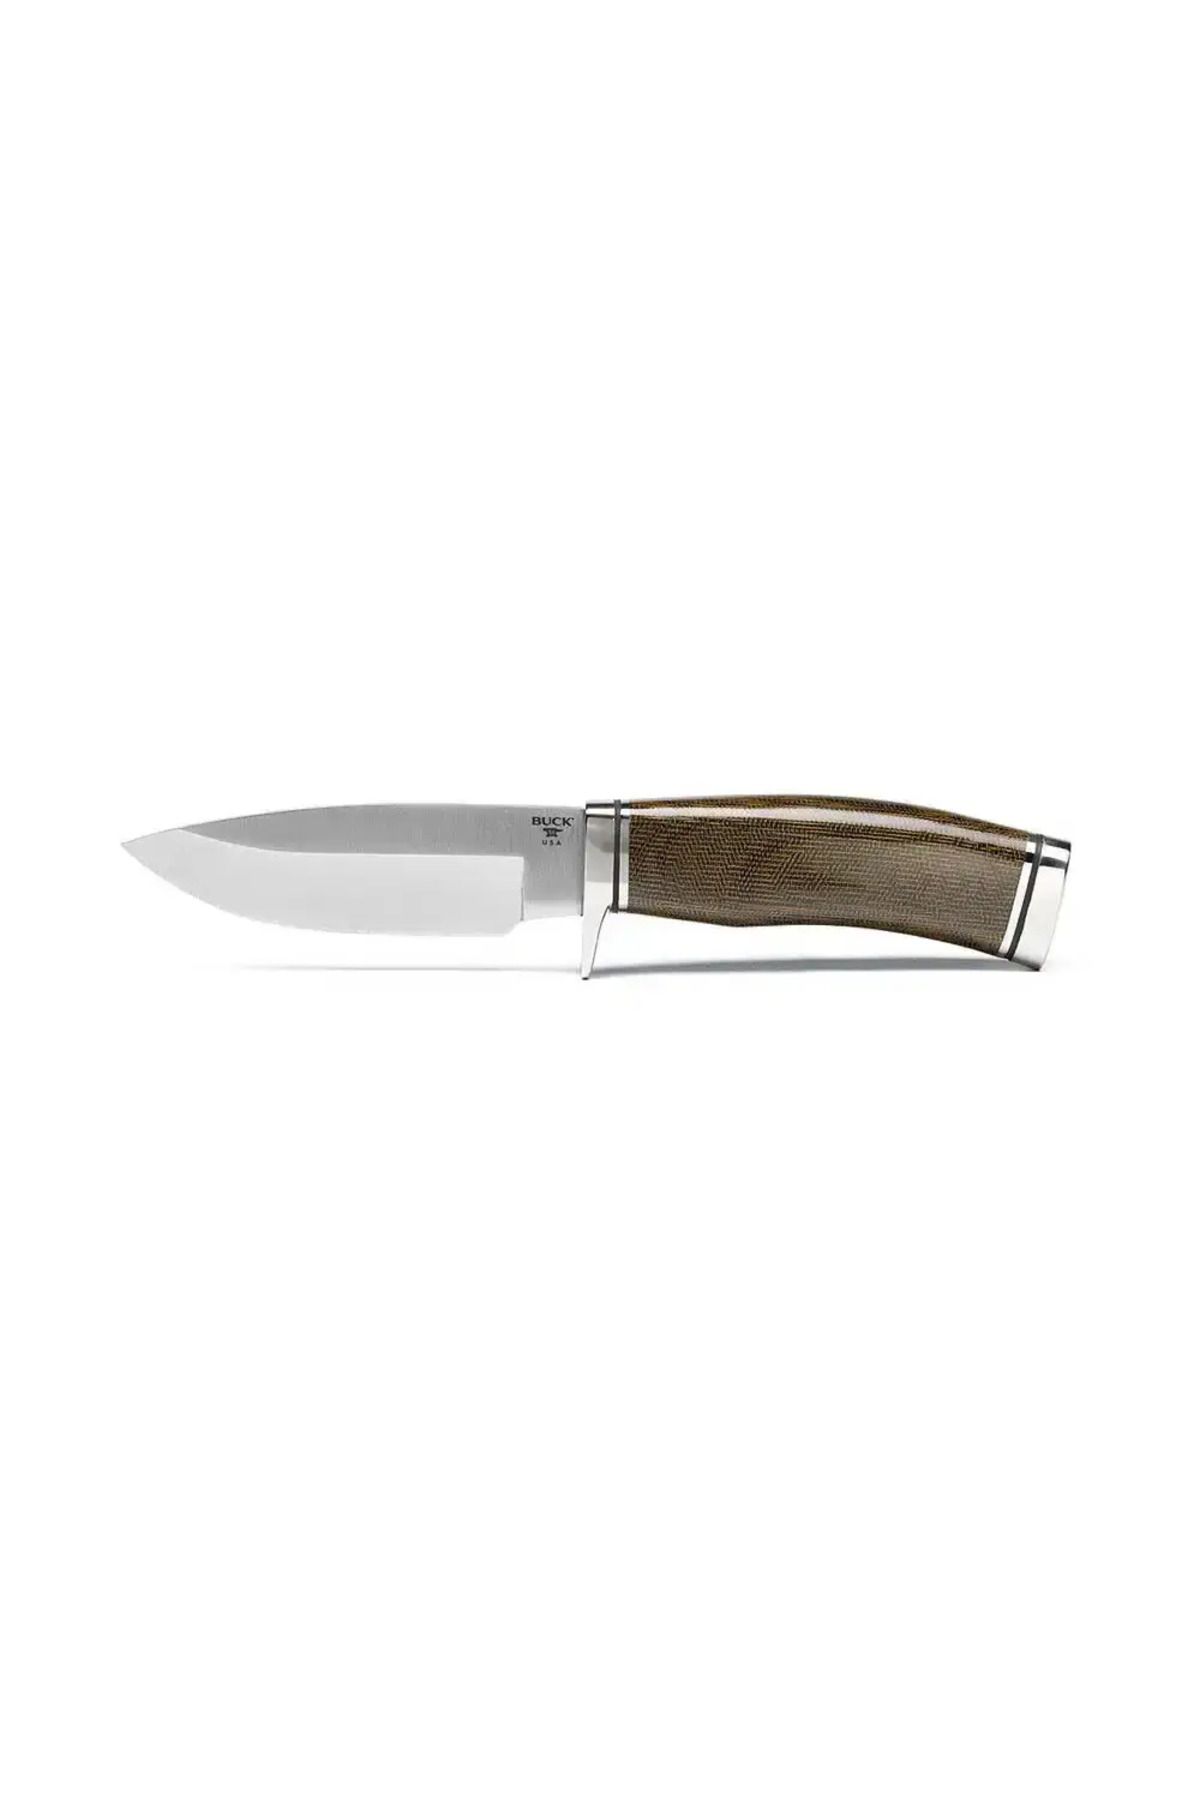 Buck 192 Vanguard Pro Micarta Sap 2023 Limitli Üretim Bıçak